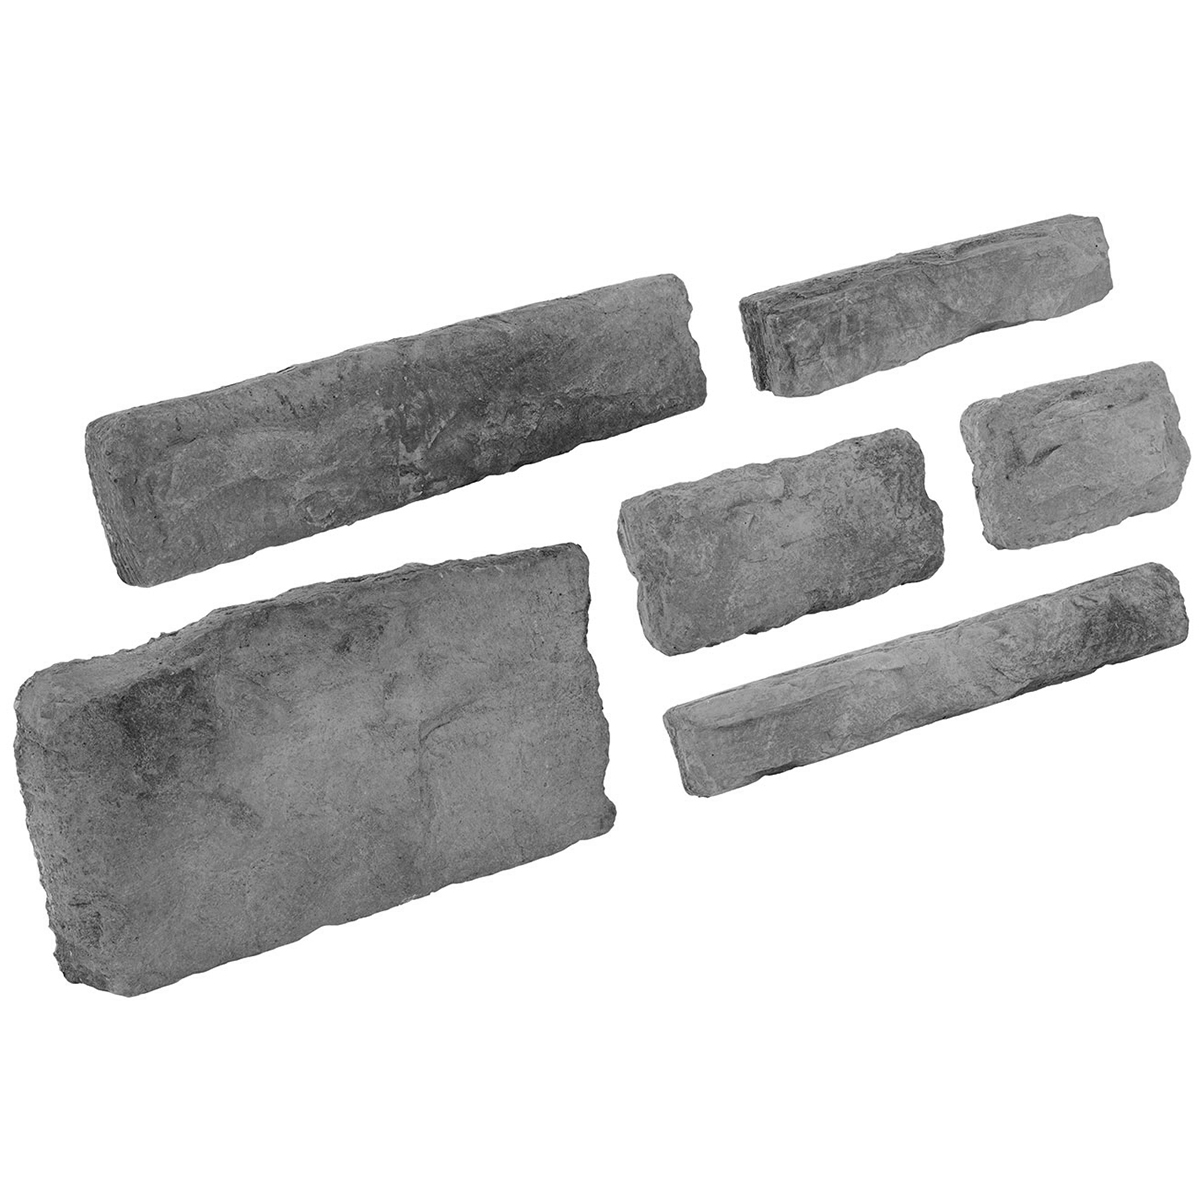 Foto de revestimento de pedra de imitação de aspe da Sardenha 